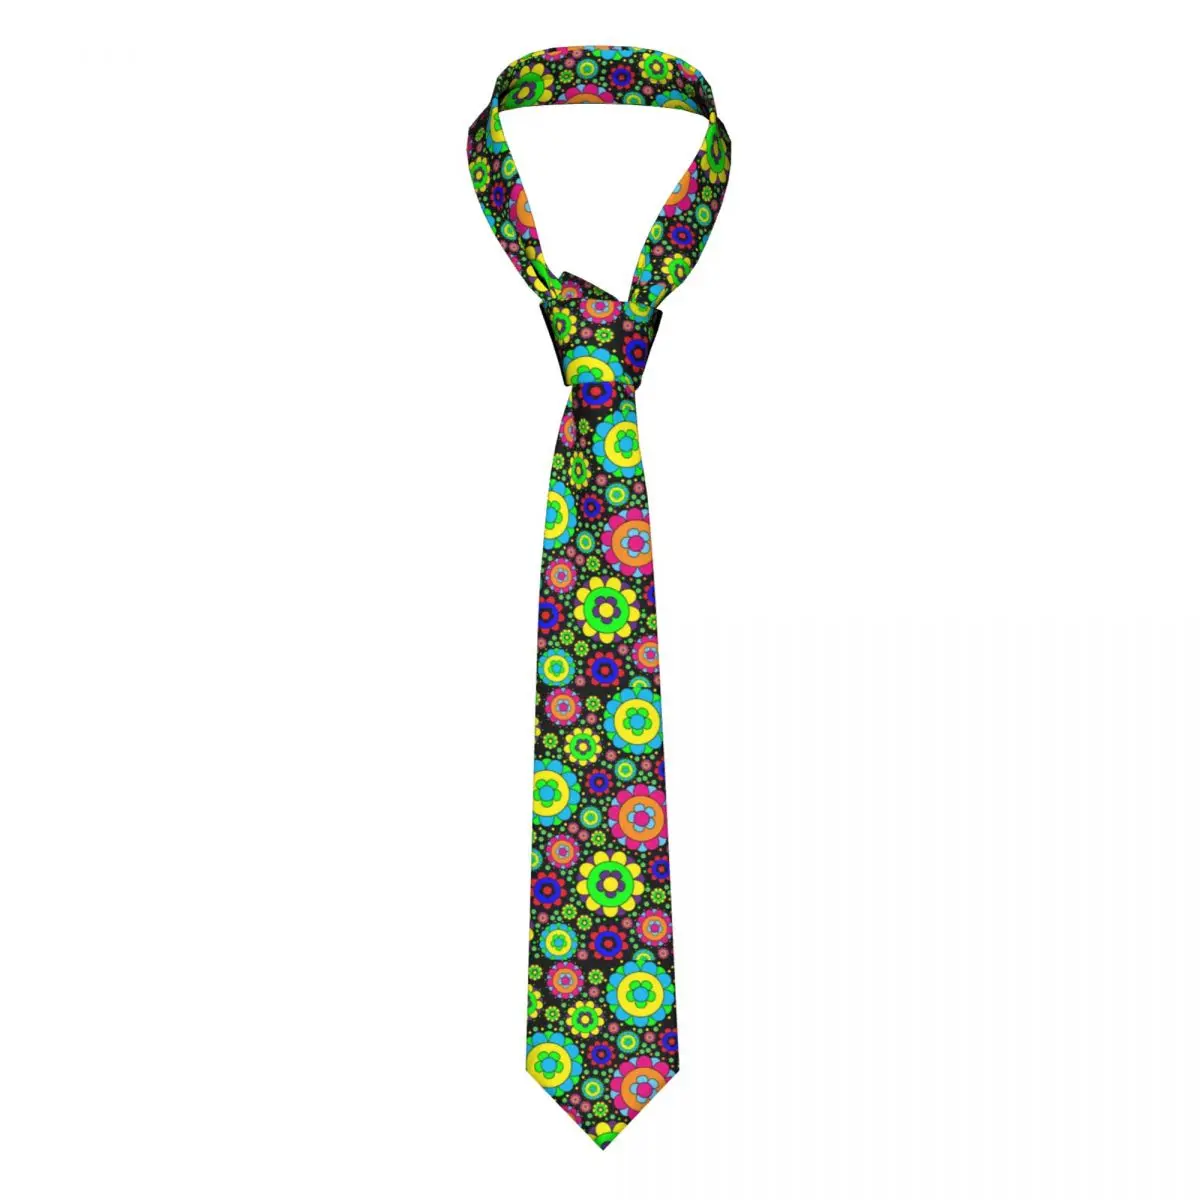 

Цветочный мощный винтажный галстук 60s 70s Хиппи Блузка с принтом модные галстуки для шеи аксессуары для мужчин галстук